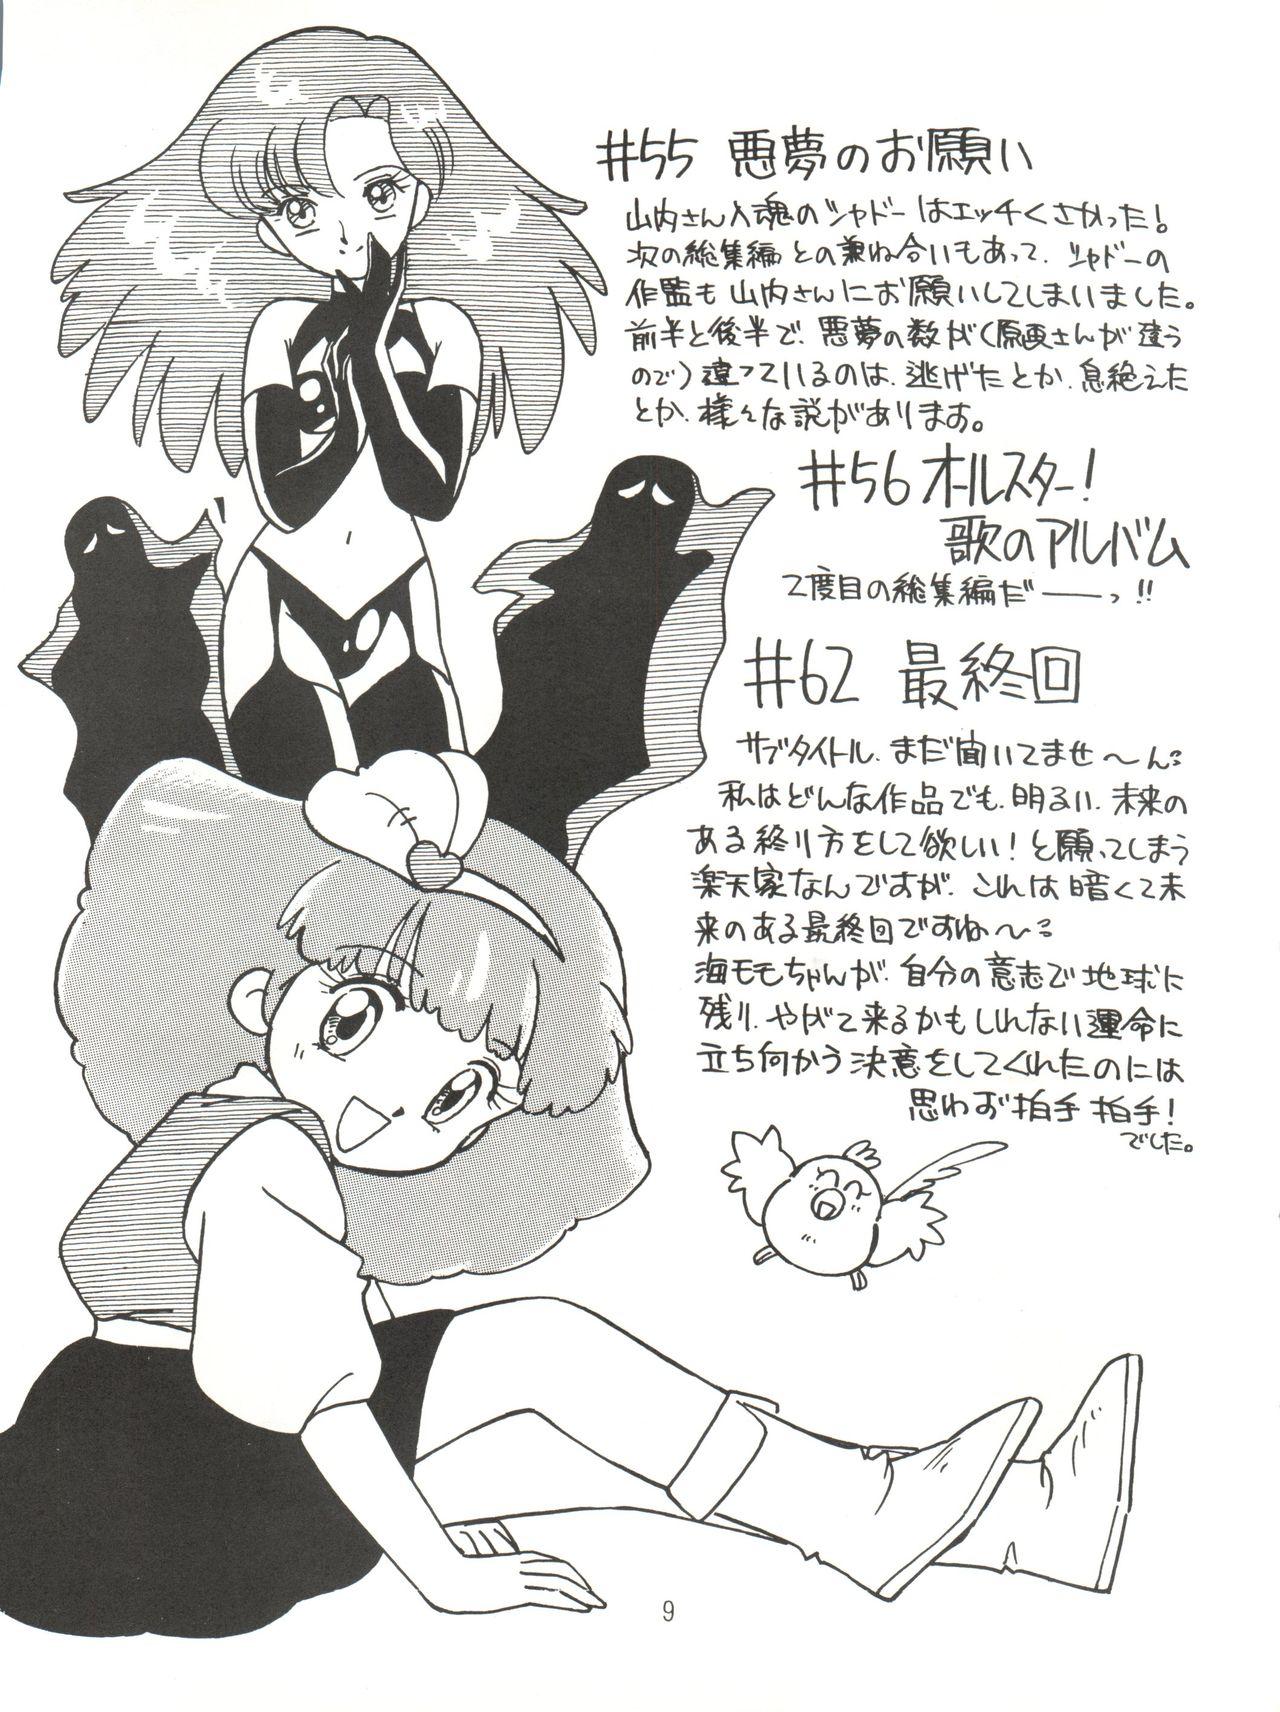 Threeway [紫電会 (お梅) MOMO POWER (Mahou no Princess Minky Momo) - Minky momo New - Page 9